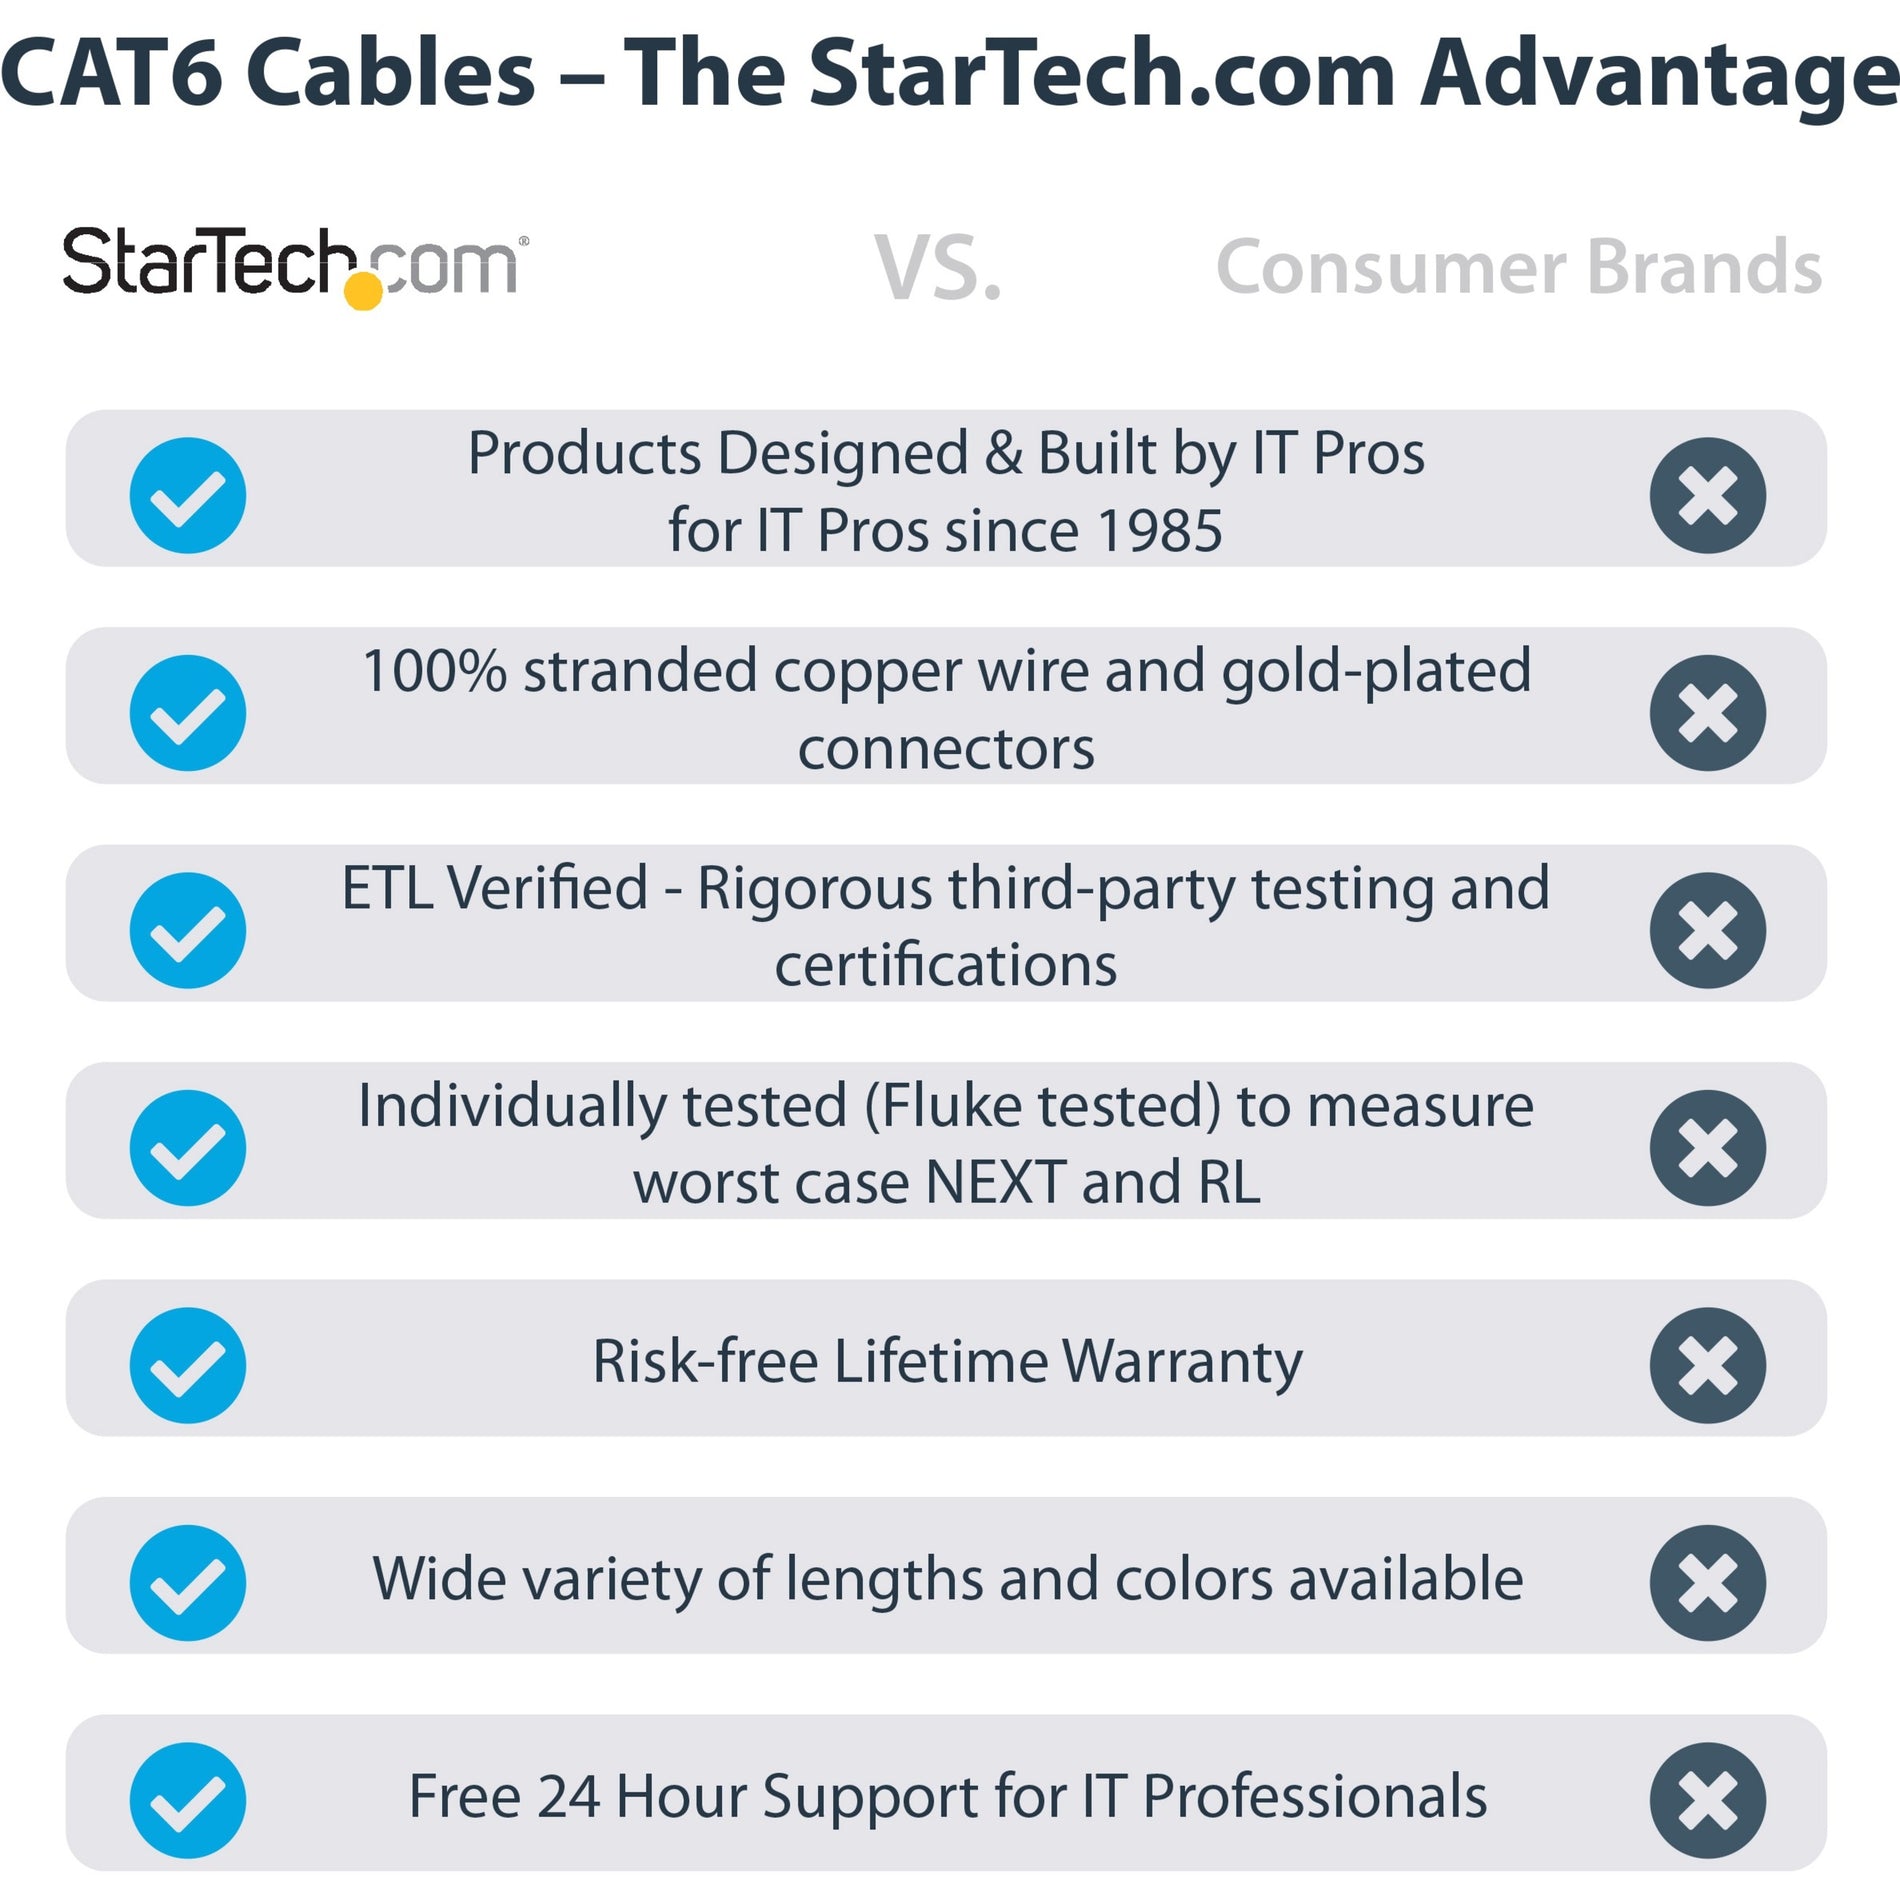 Startech.com N6PATCH1BL Cat6 网线 1 英尺 10 Gbit/s 数据传输速率 蓝色 品牌名称翻译: 星奇（Startech）